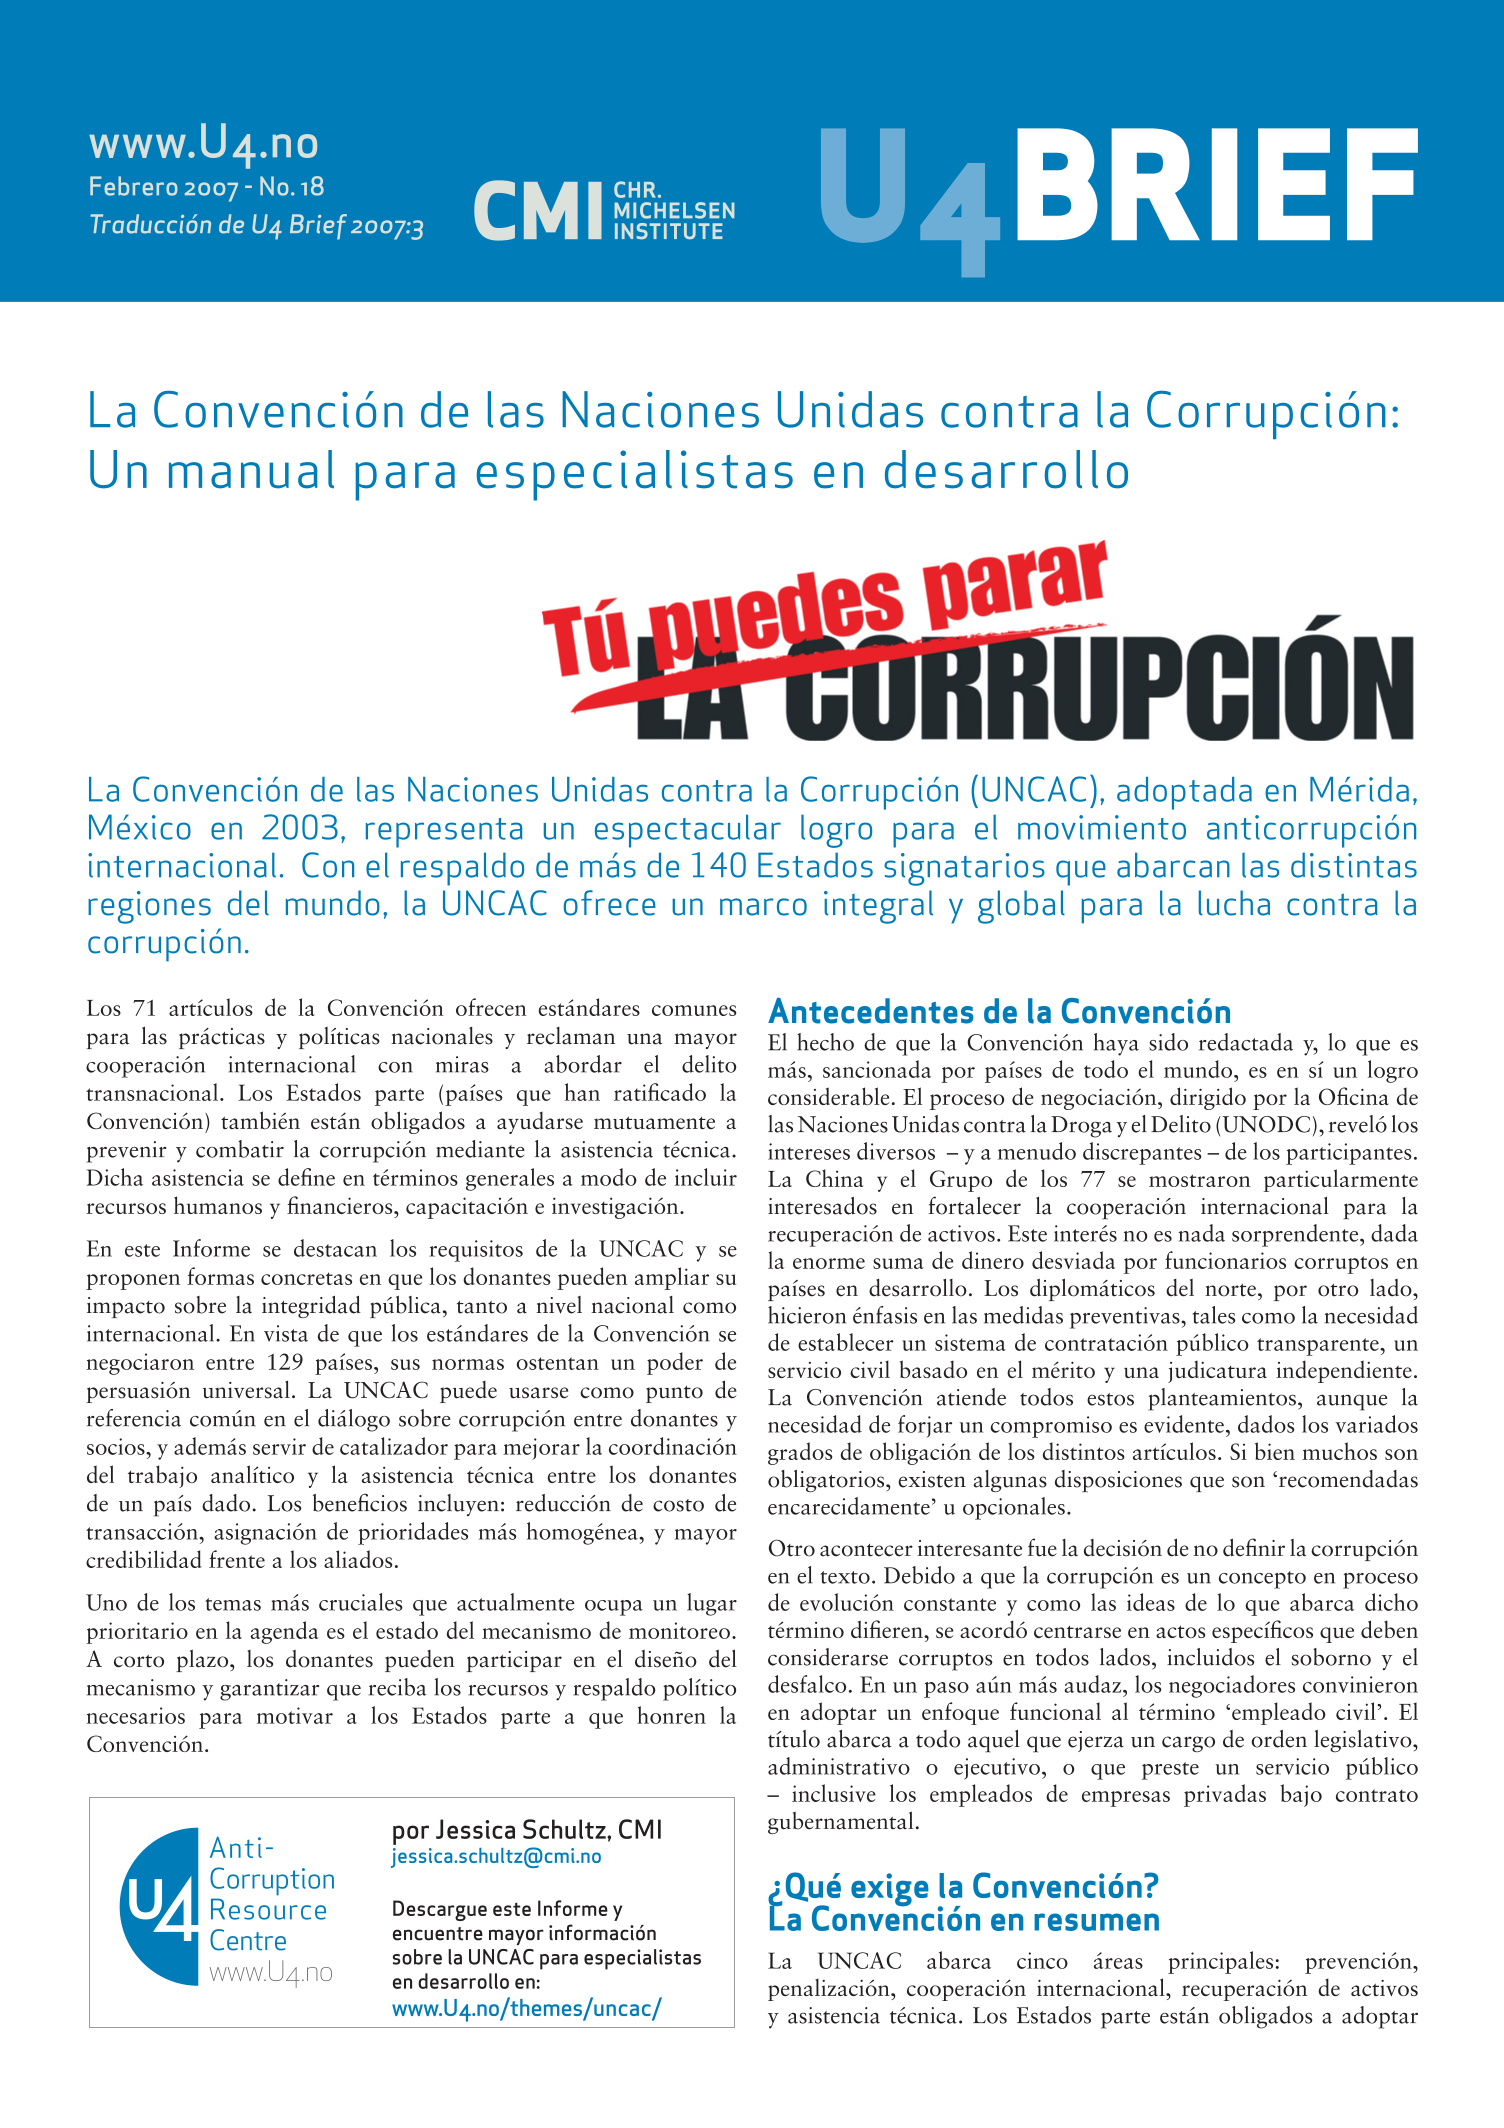 La Convención de las Naciones Unidas contra la Corrupción: Un manual para especialistas en desarrollo